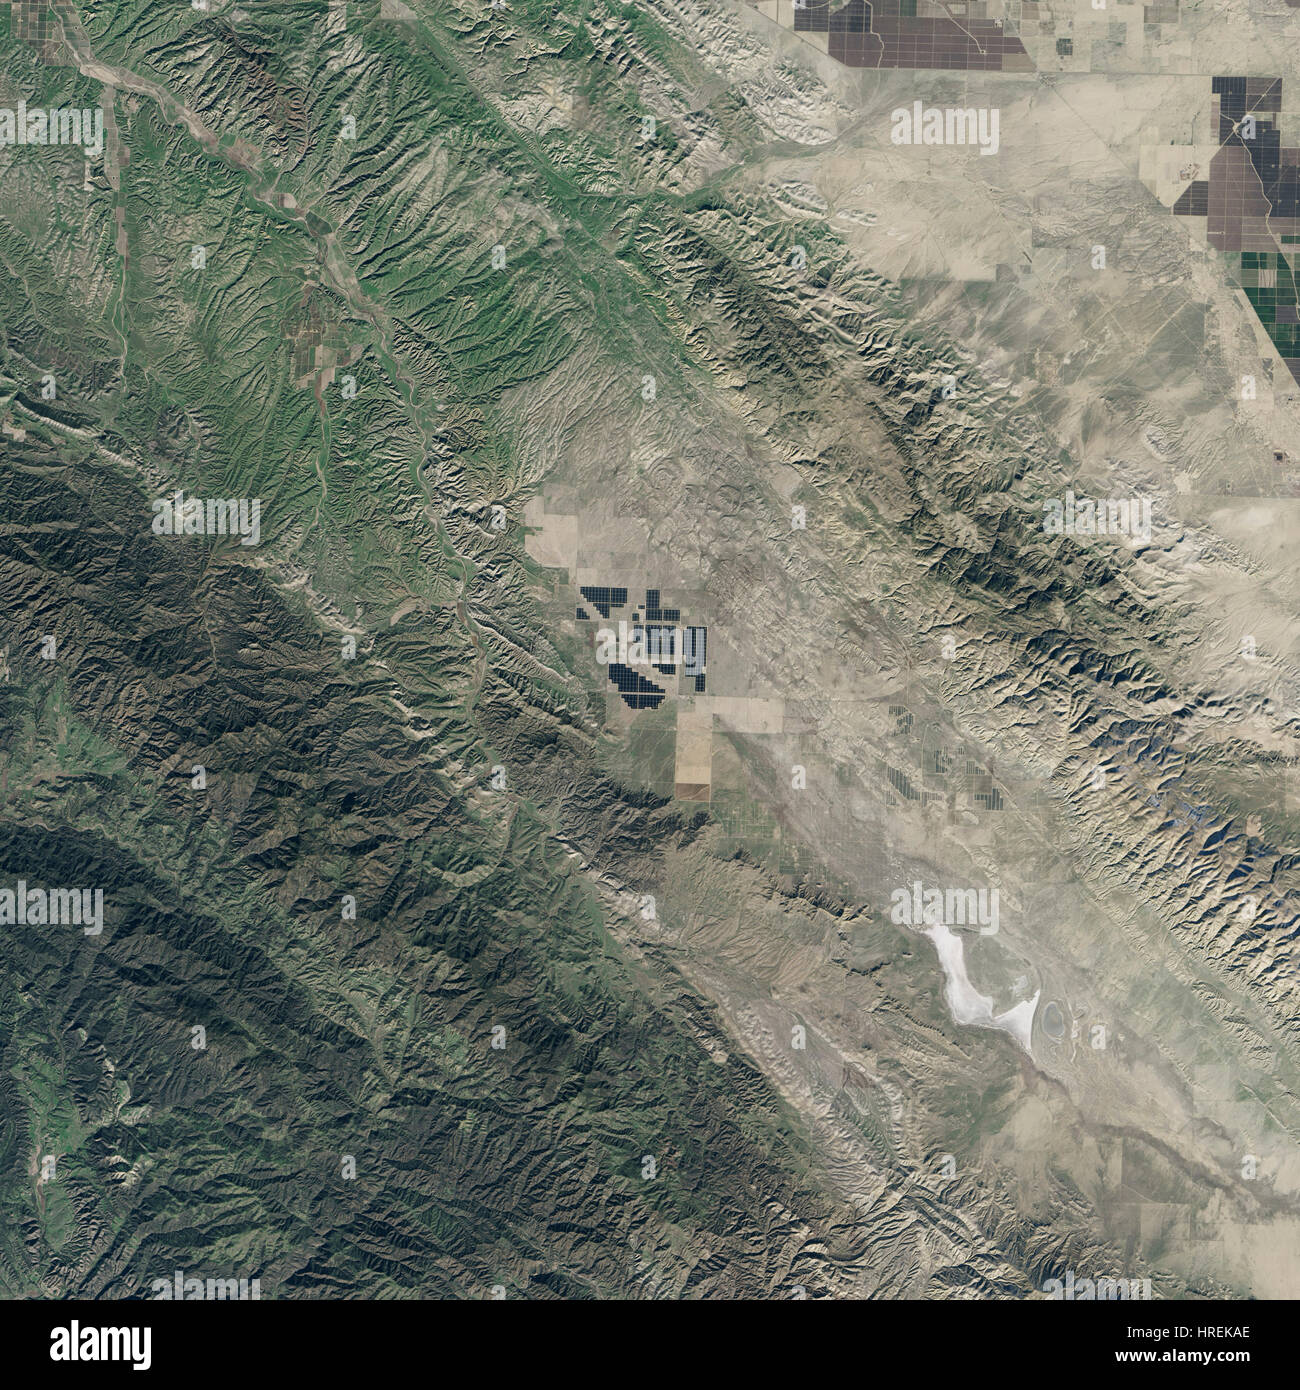 Nove milioni di tellururo di cadmio moduli solari di coprire una parte di Carrizo Plain nella California meridionale. I moduli sono parte di Topaz Solar Farm, uno dei più grandi potenza fotovoltaico impianti in tutto il mondo. A 9,5 chilometri quadrati (25,6 chilometri quadrati), l'impianto è di circa un terzo delle dimensioni di Manhattan Island, o l'equivalente di 4.600 campi da calcio. Acquisito il 2 gennaio 2015 dalla Nasa il satellite Landsat 8. (NASA) Foto Stock